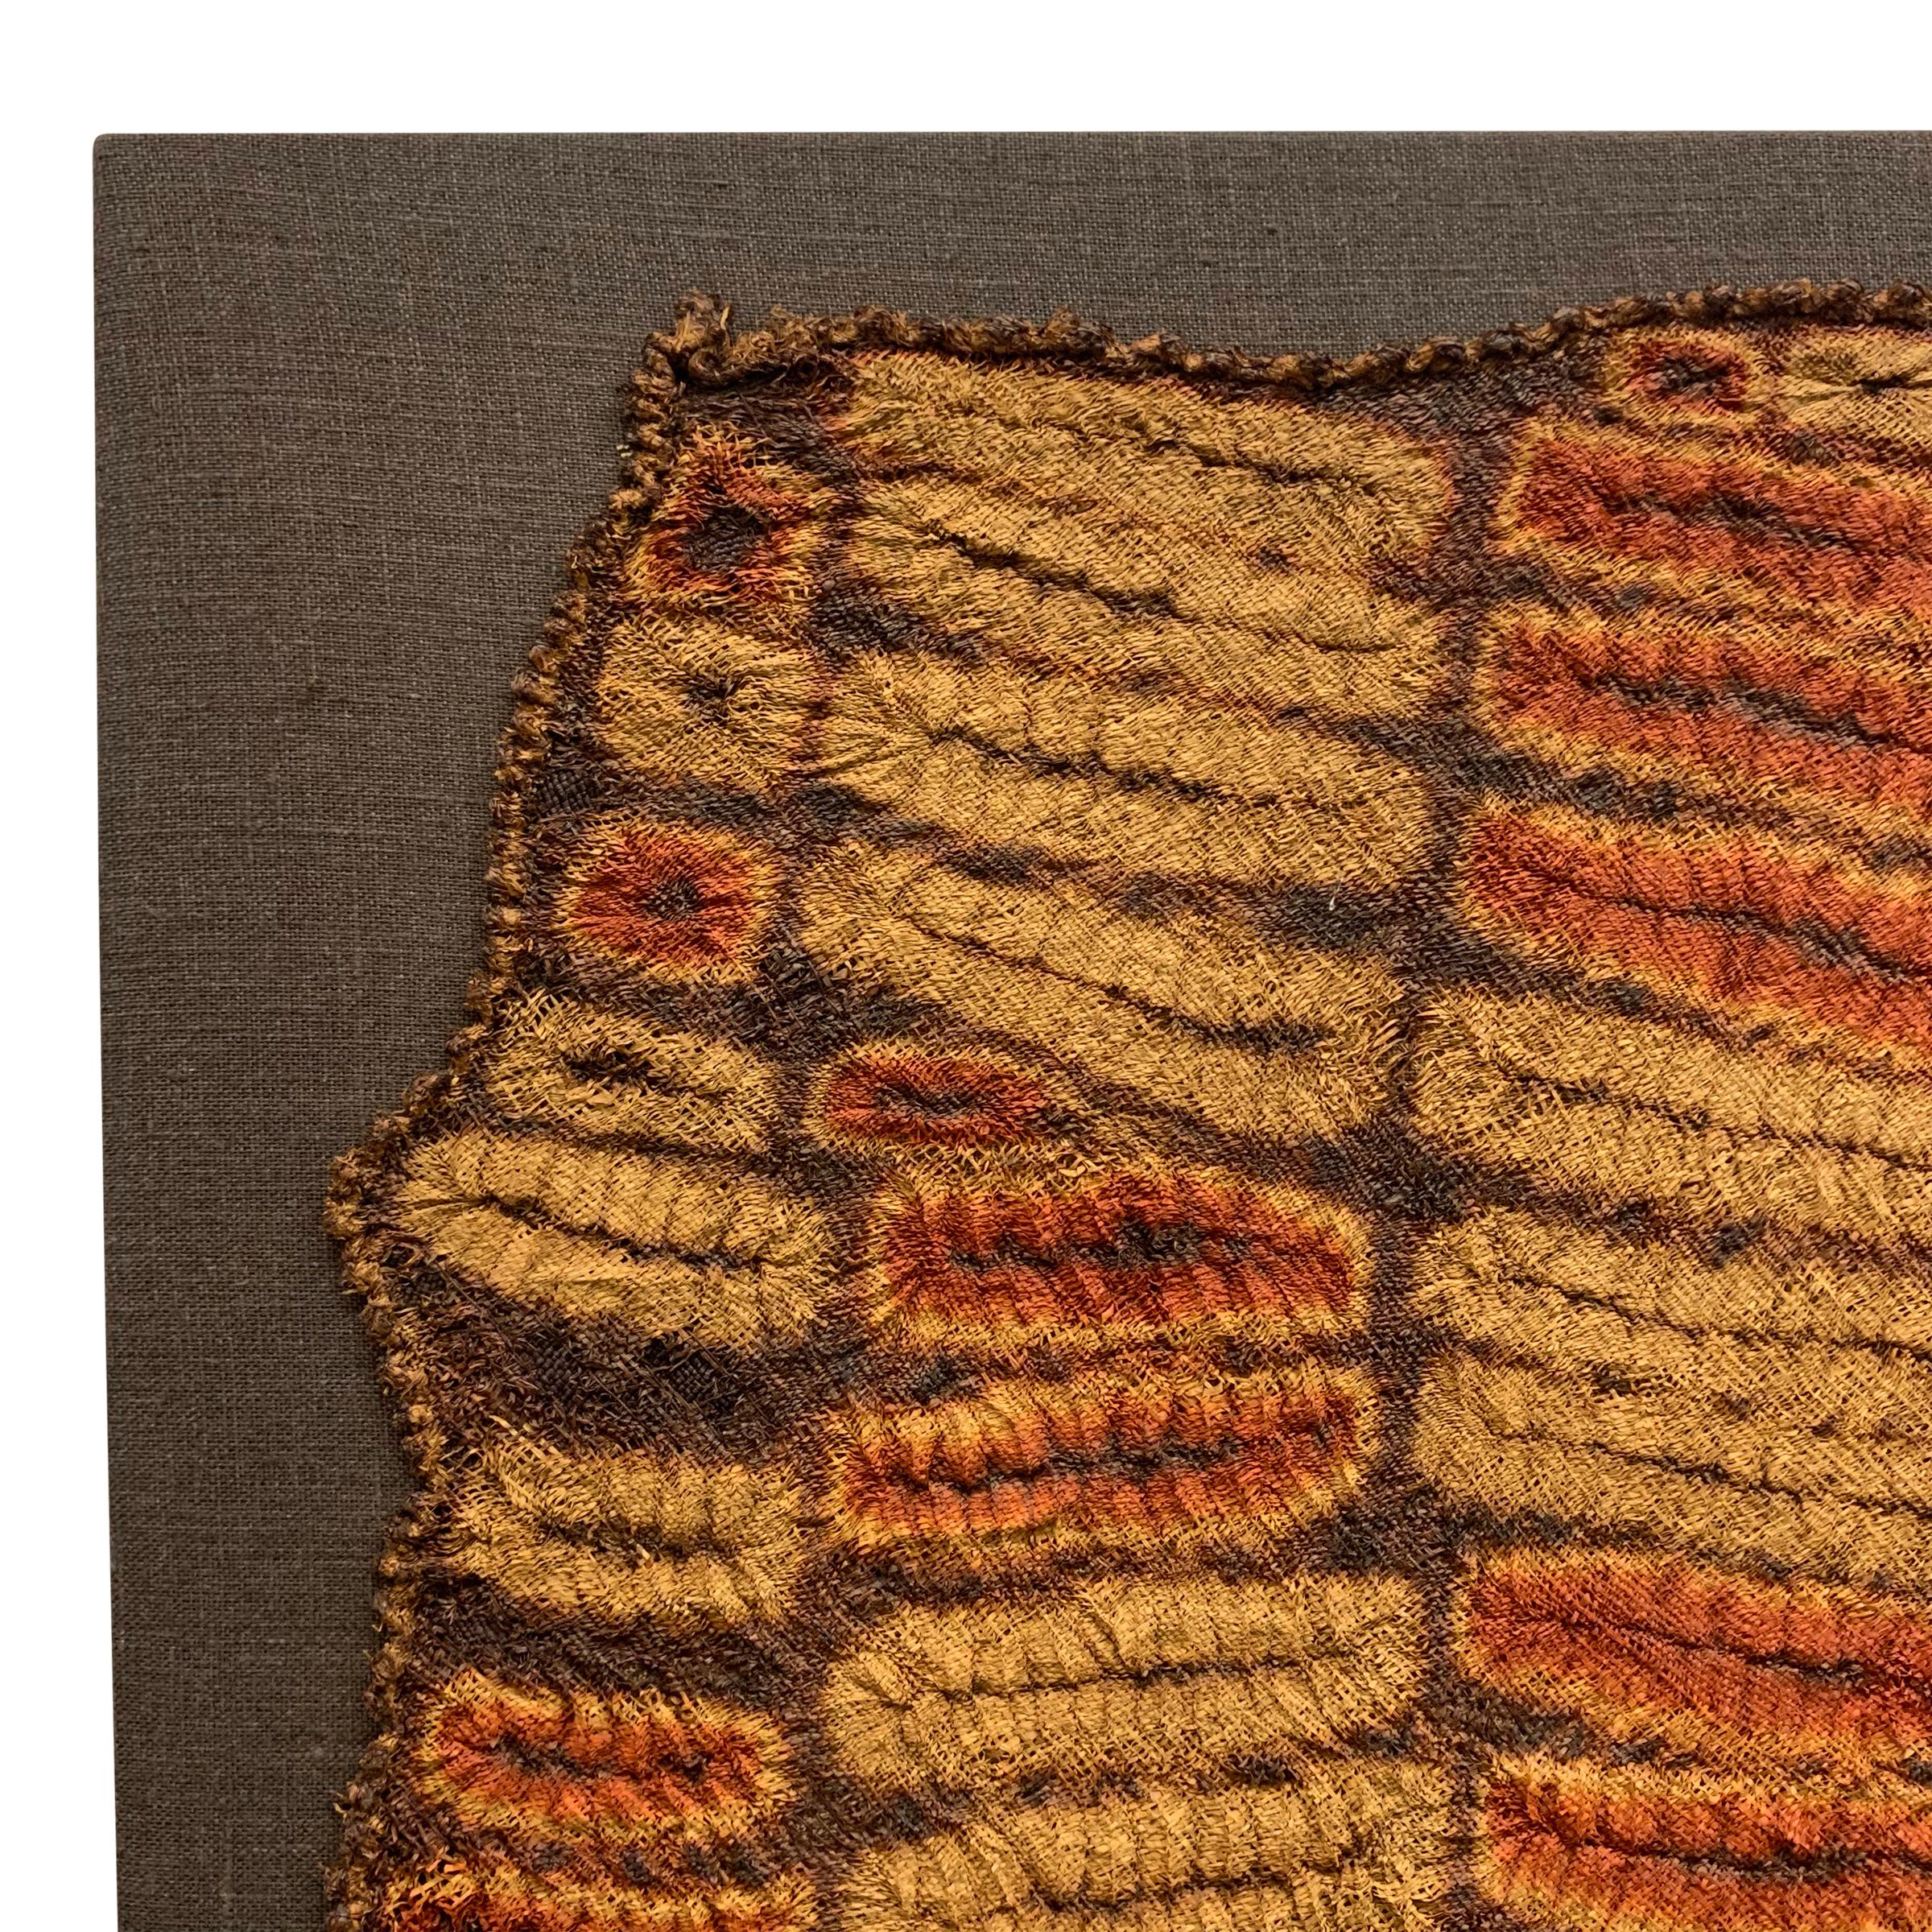 Incroyable et rare foulard de cérémonie en raphia teinté dans la masse, de style Dida (Côte d'Ivoire), datant du milieu du 20e siècle, monté sur un cadre tendu en lin. Ce mouchoir n'a pas été tissé sur un métier à tisser, mais entièrement à la main,